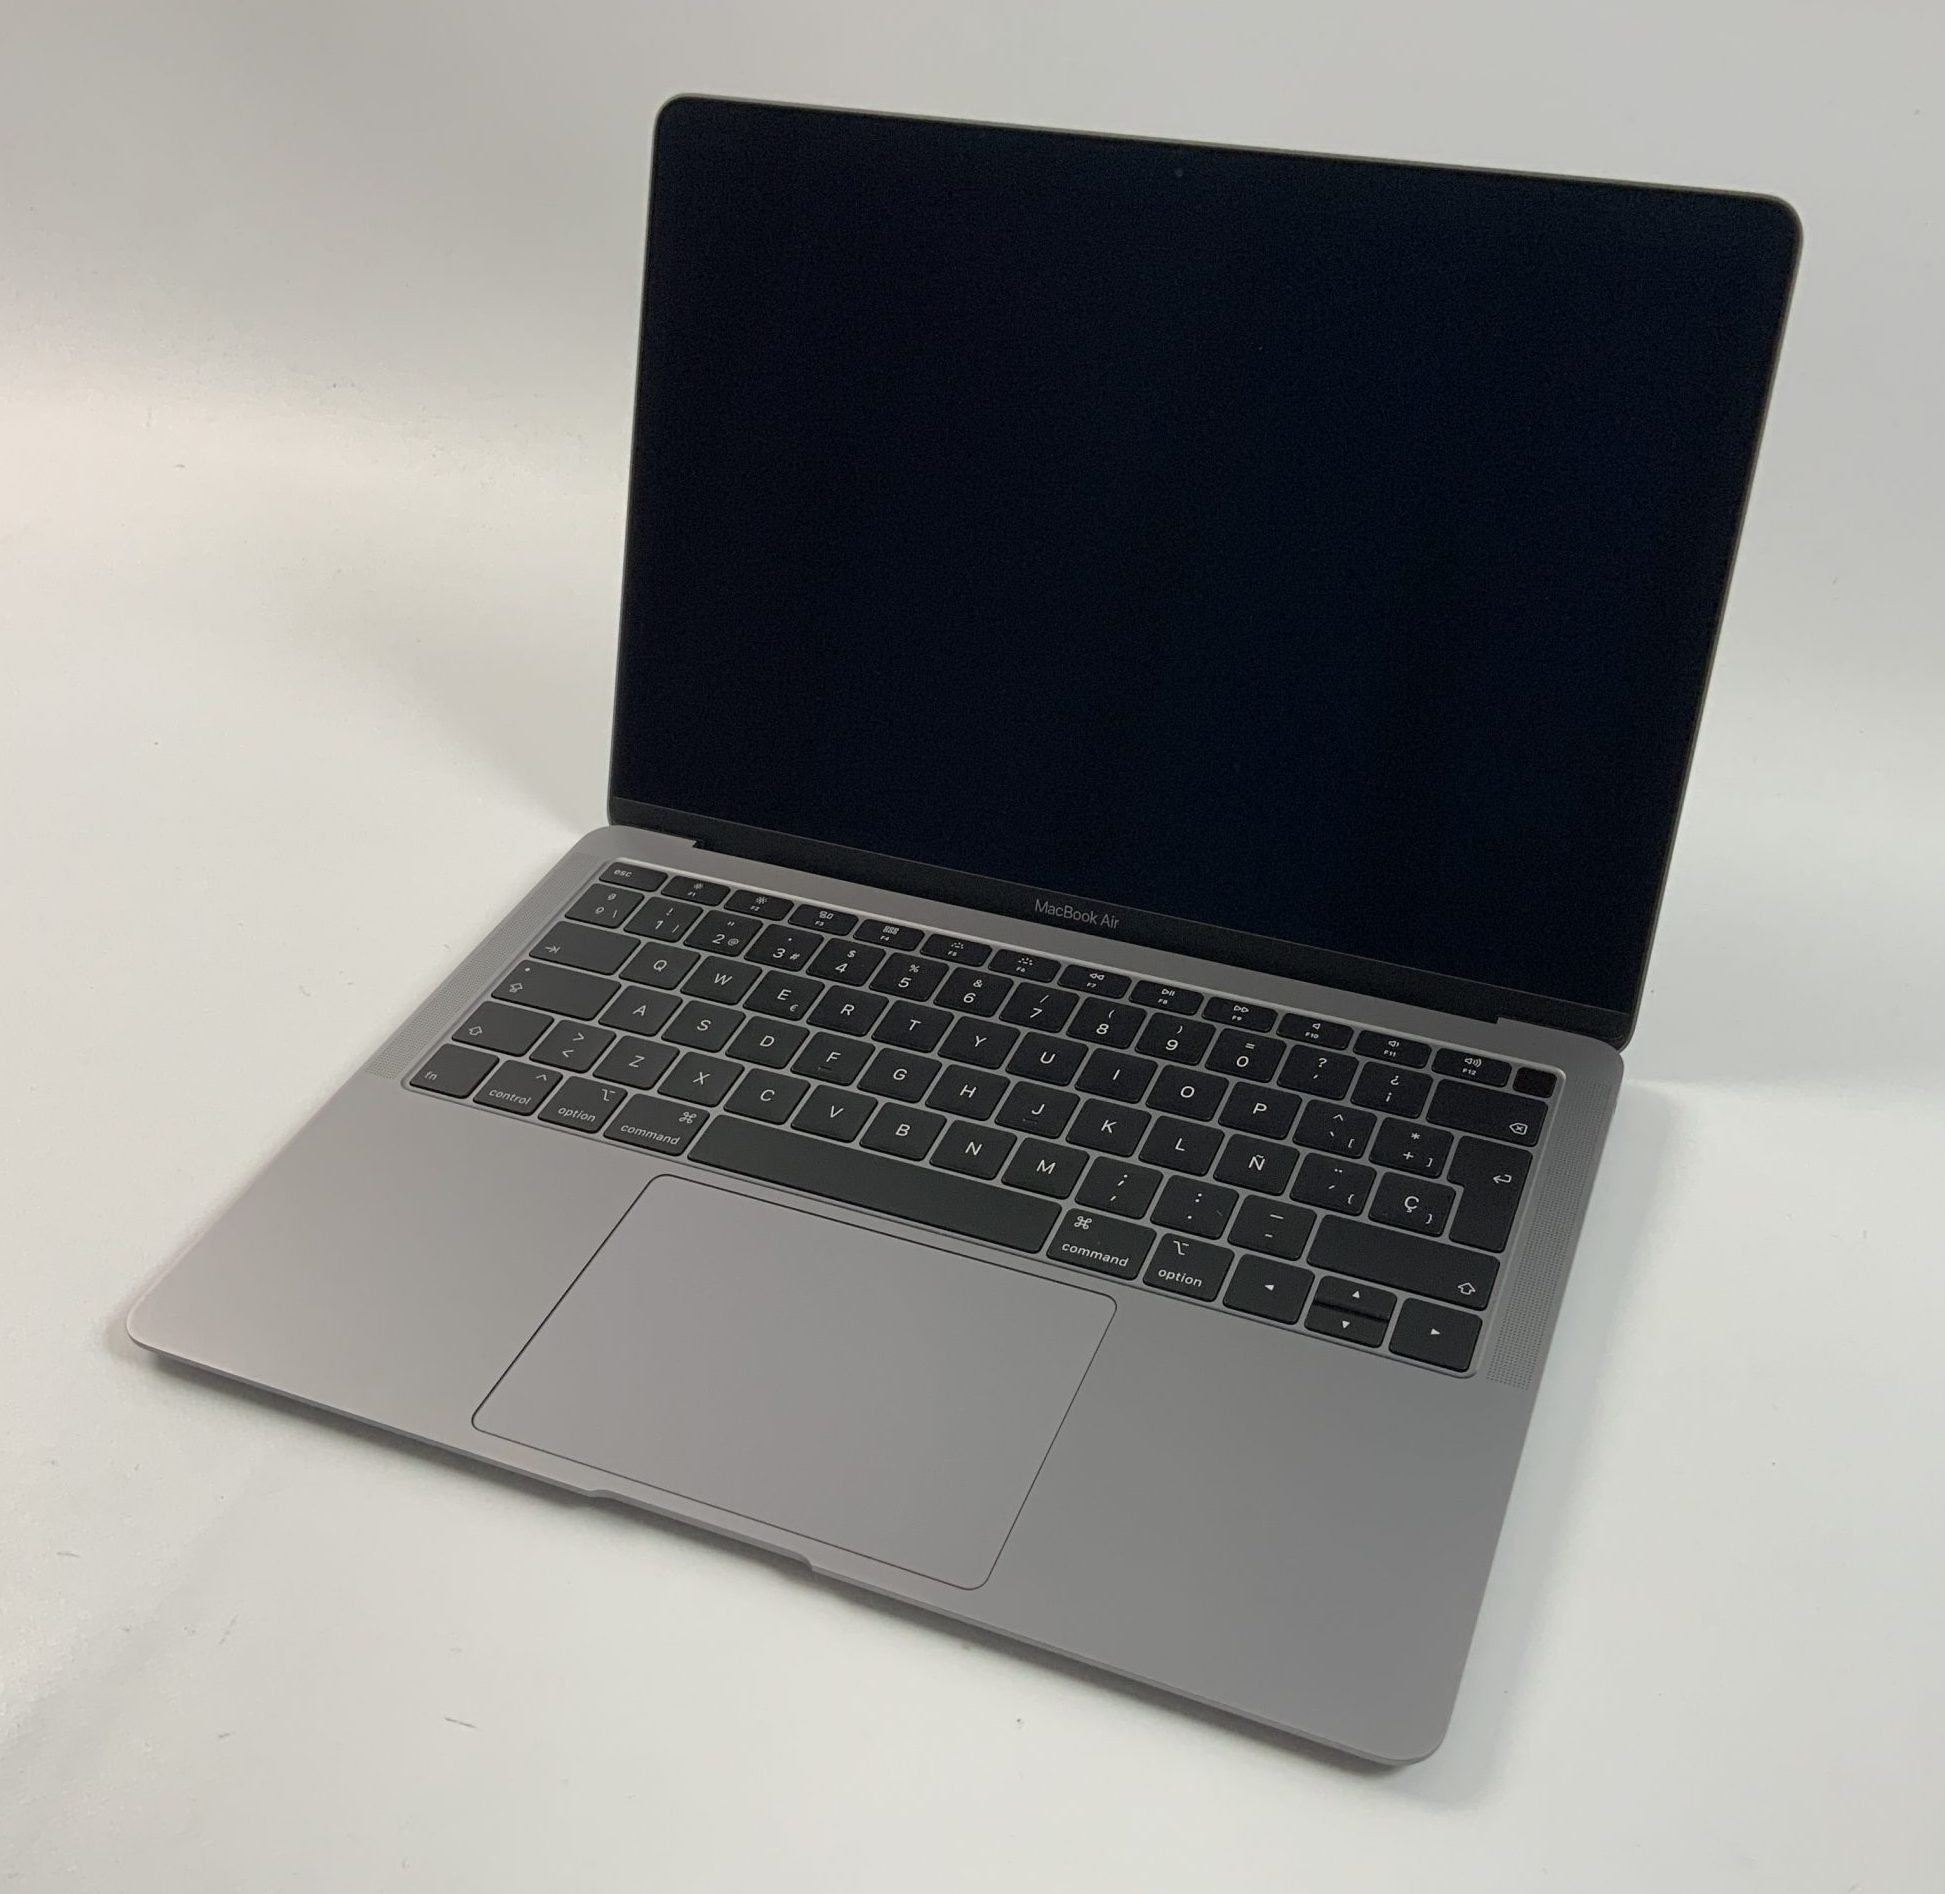 MacBook Air 13" Late 2018 (Intel Core i5 1.6 GHz 16 GB RAM 256 GB SSD), Space Gray, Intel Core i5 1.6 GHz, 16 GB RAM, 256 GB SSD, Afbeelding 1